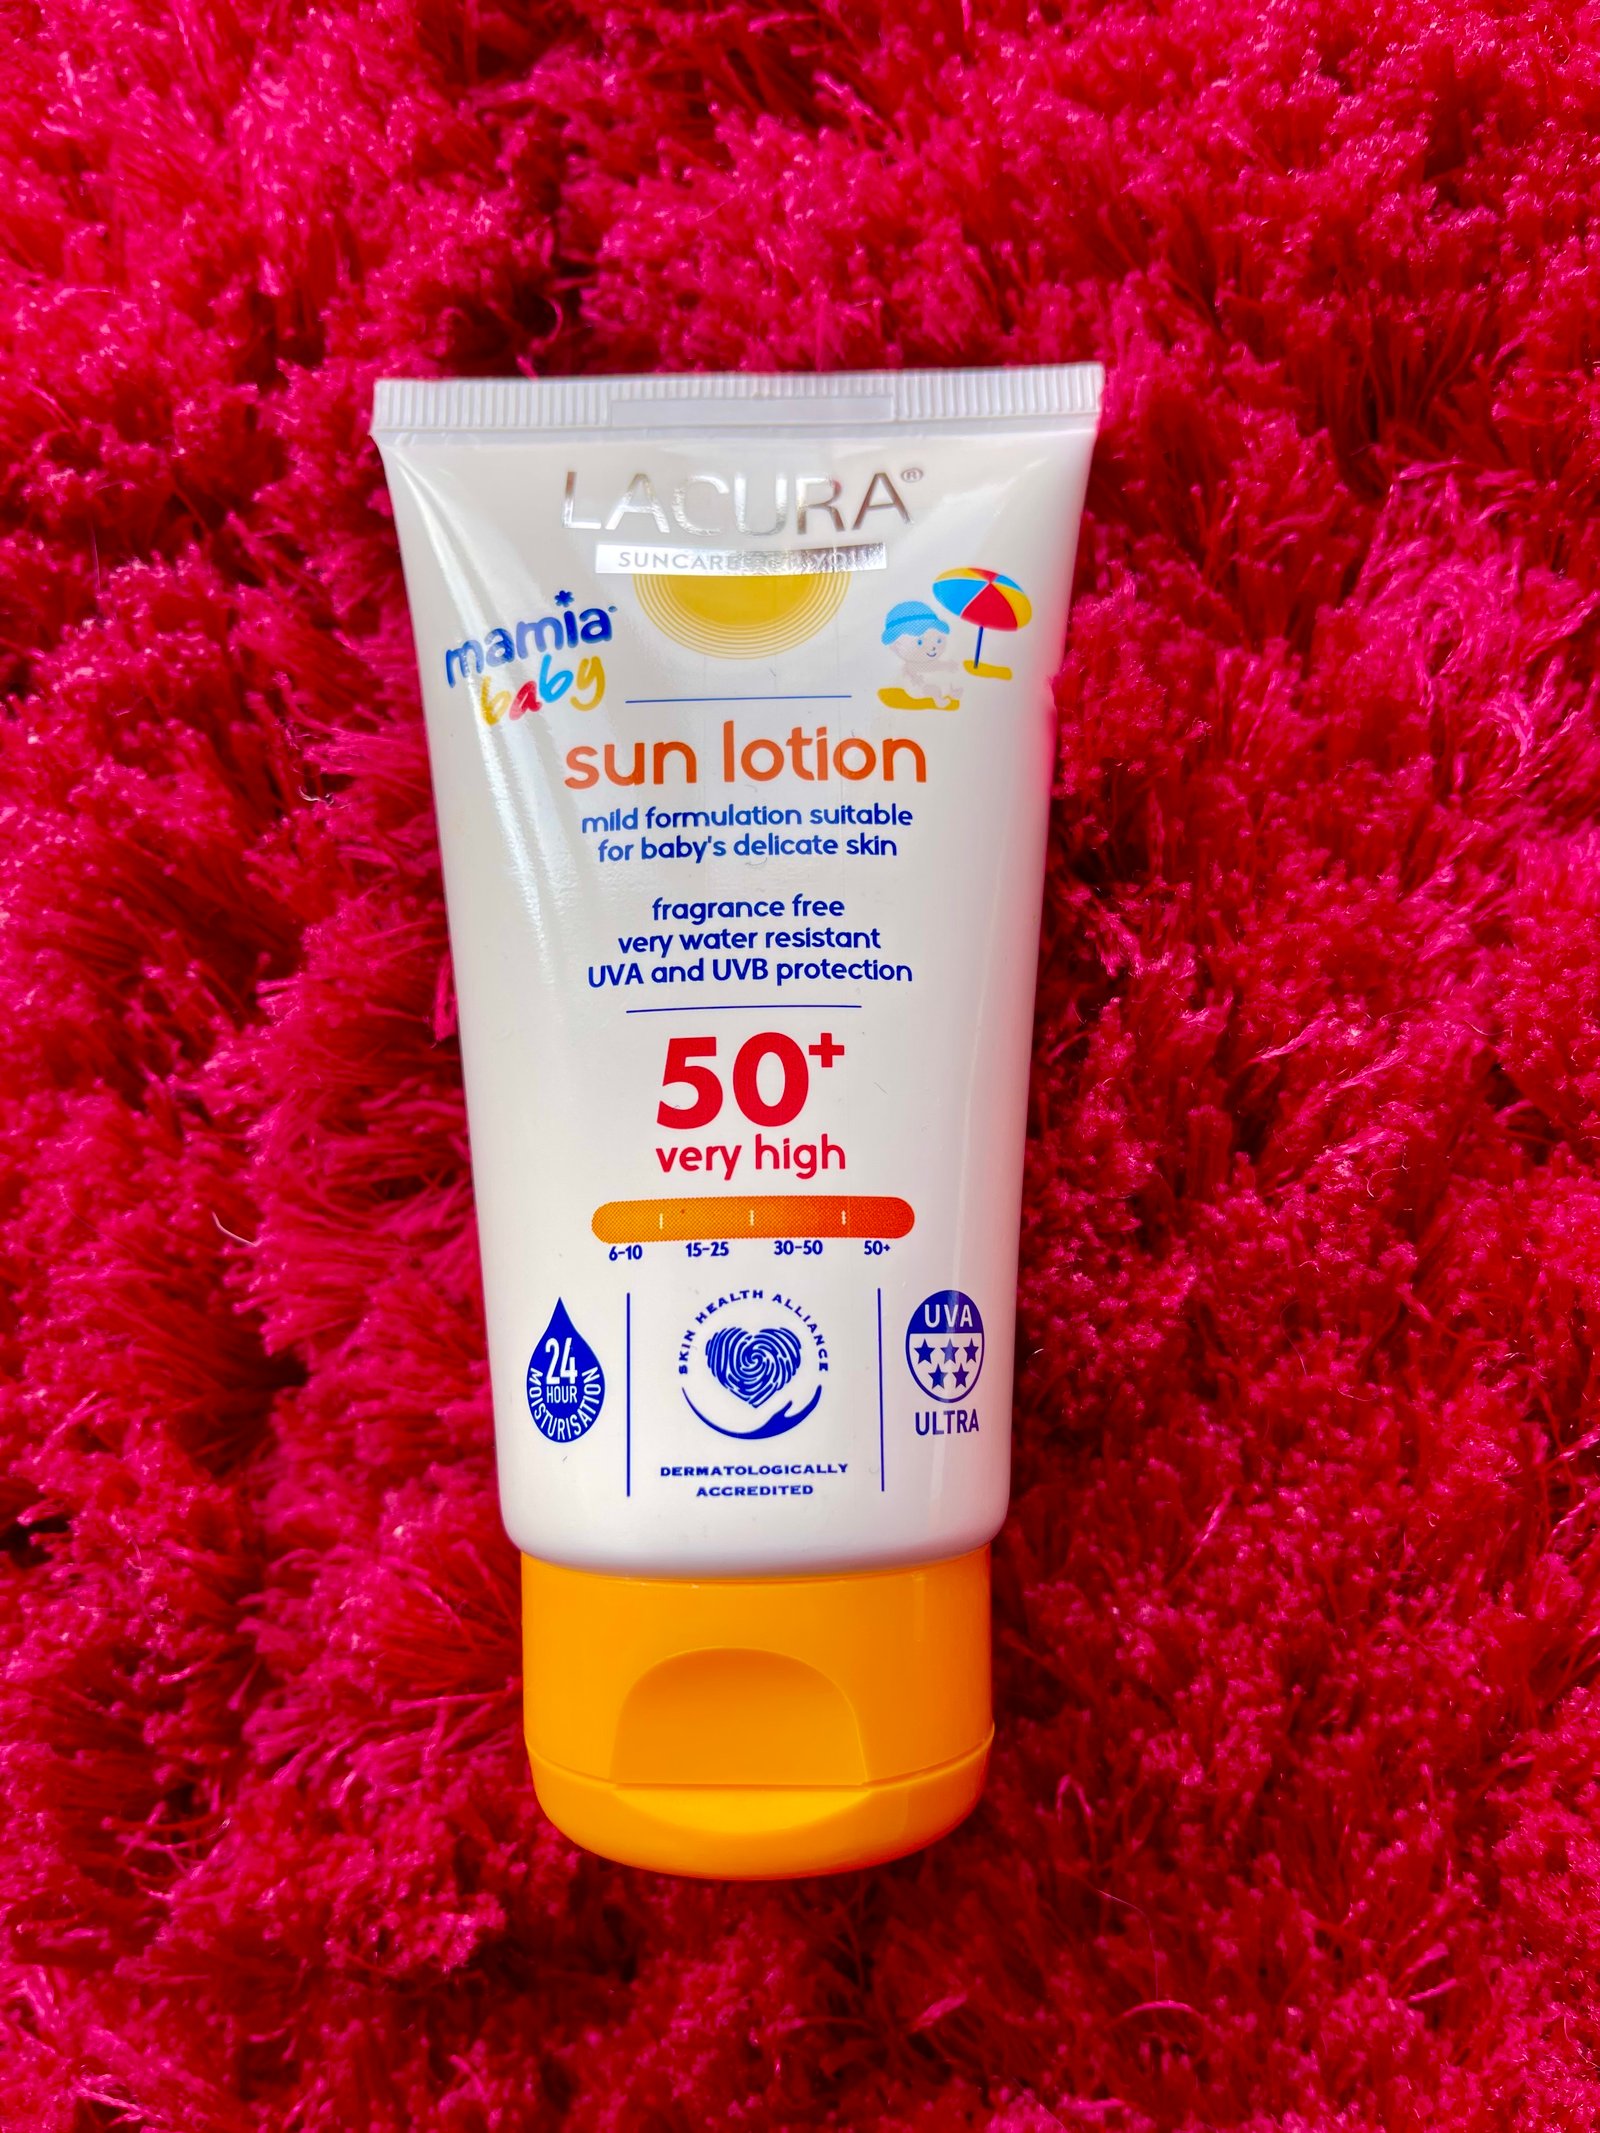 Aldi lacura baby kids sun lotion sun cream is cheap and effective